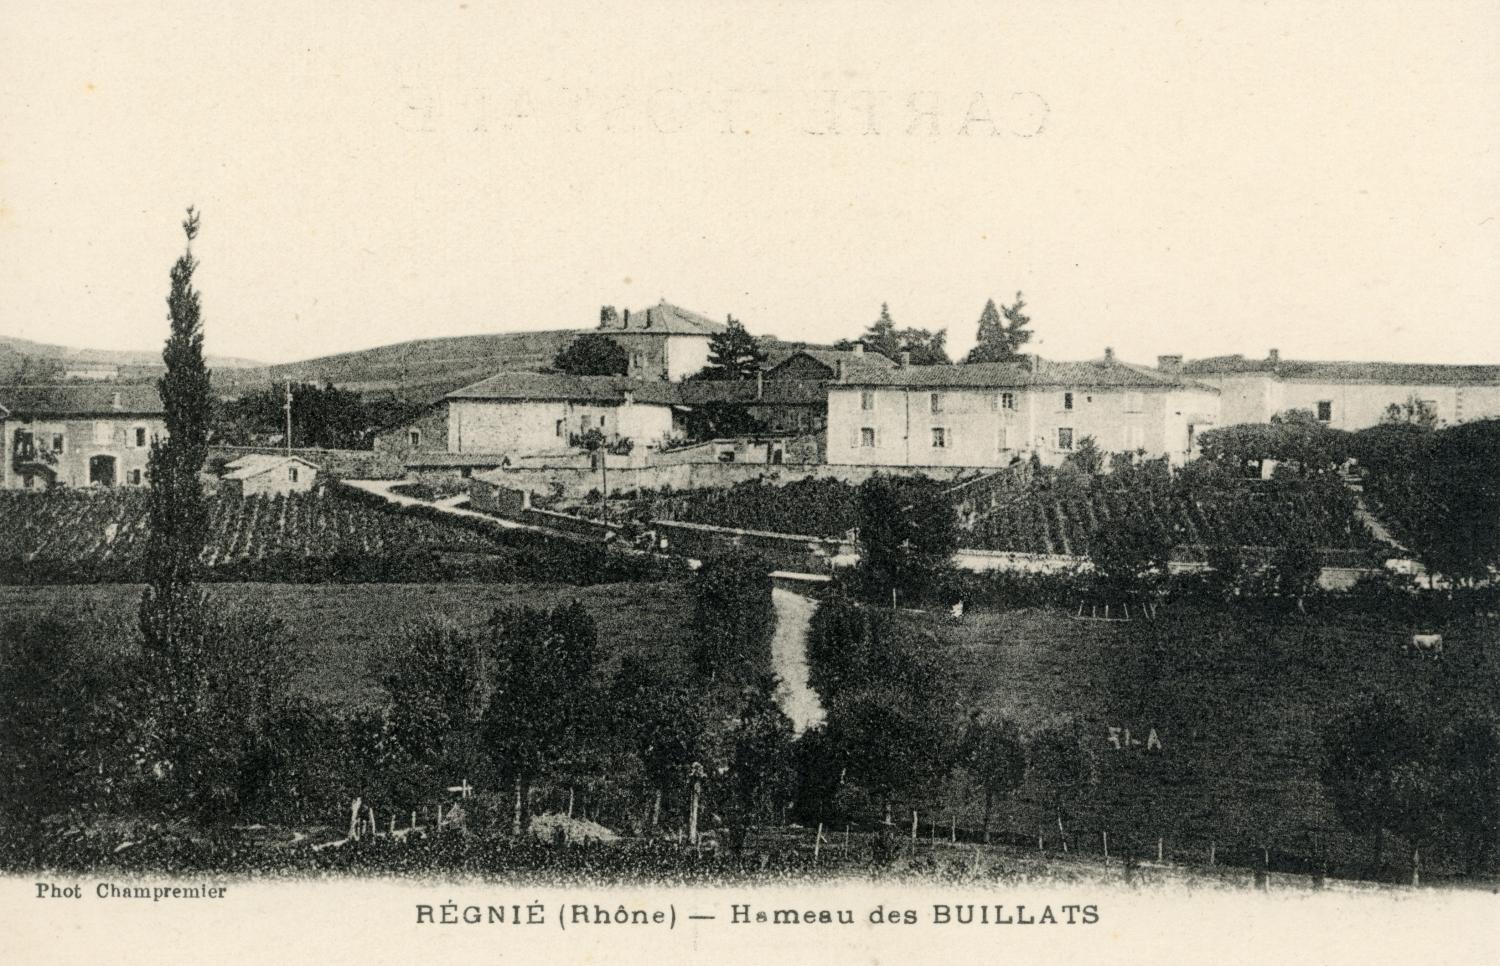 Régnié (Rhône). - Hameau des Buillats